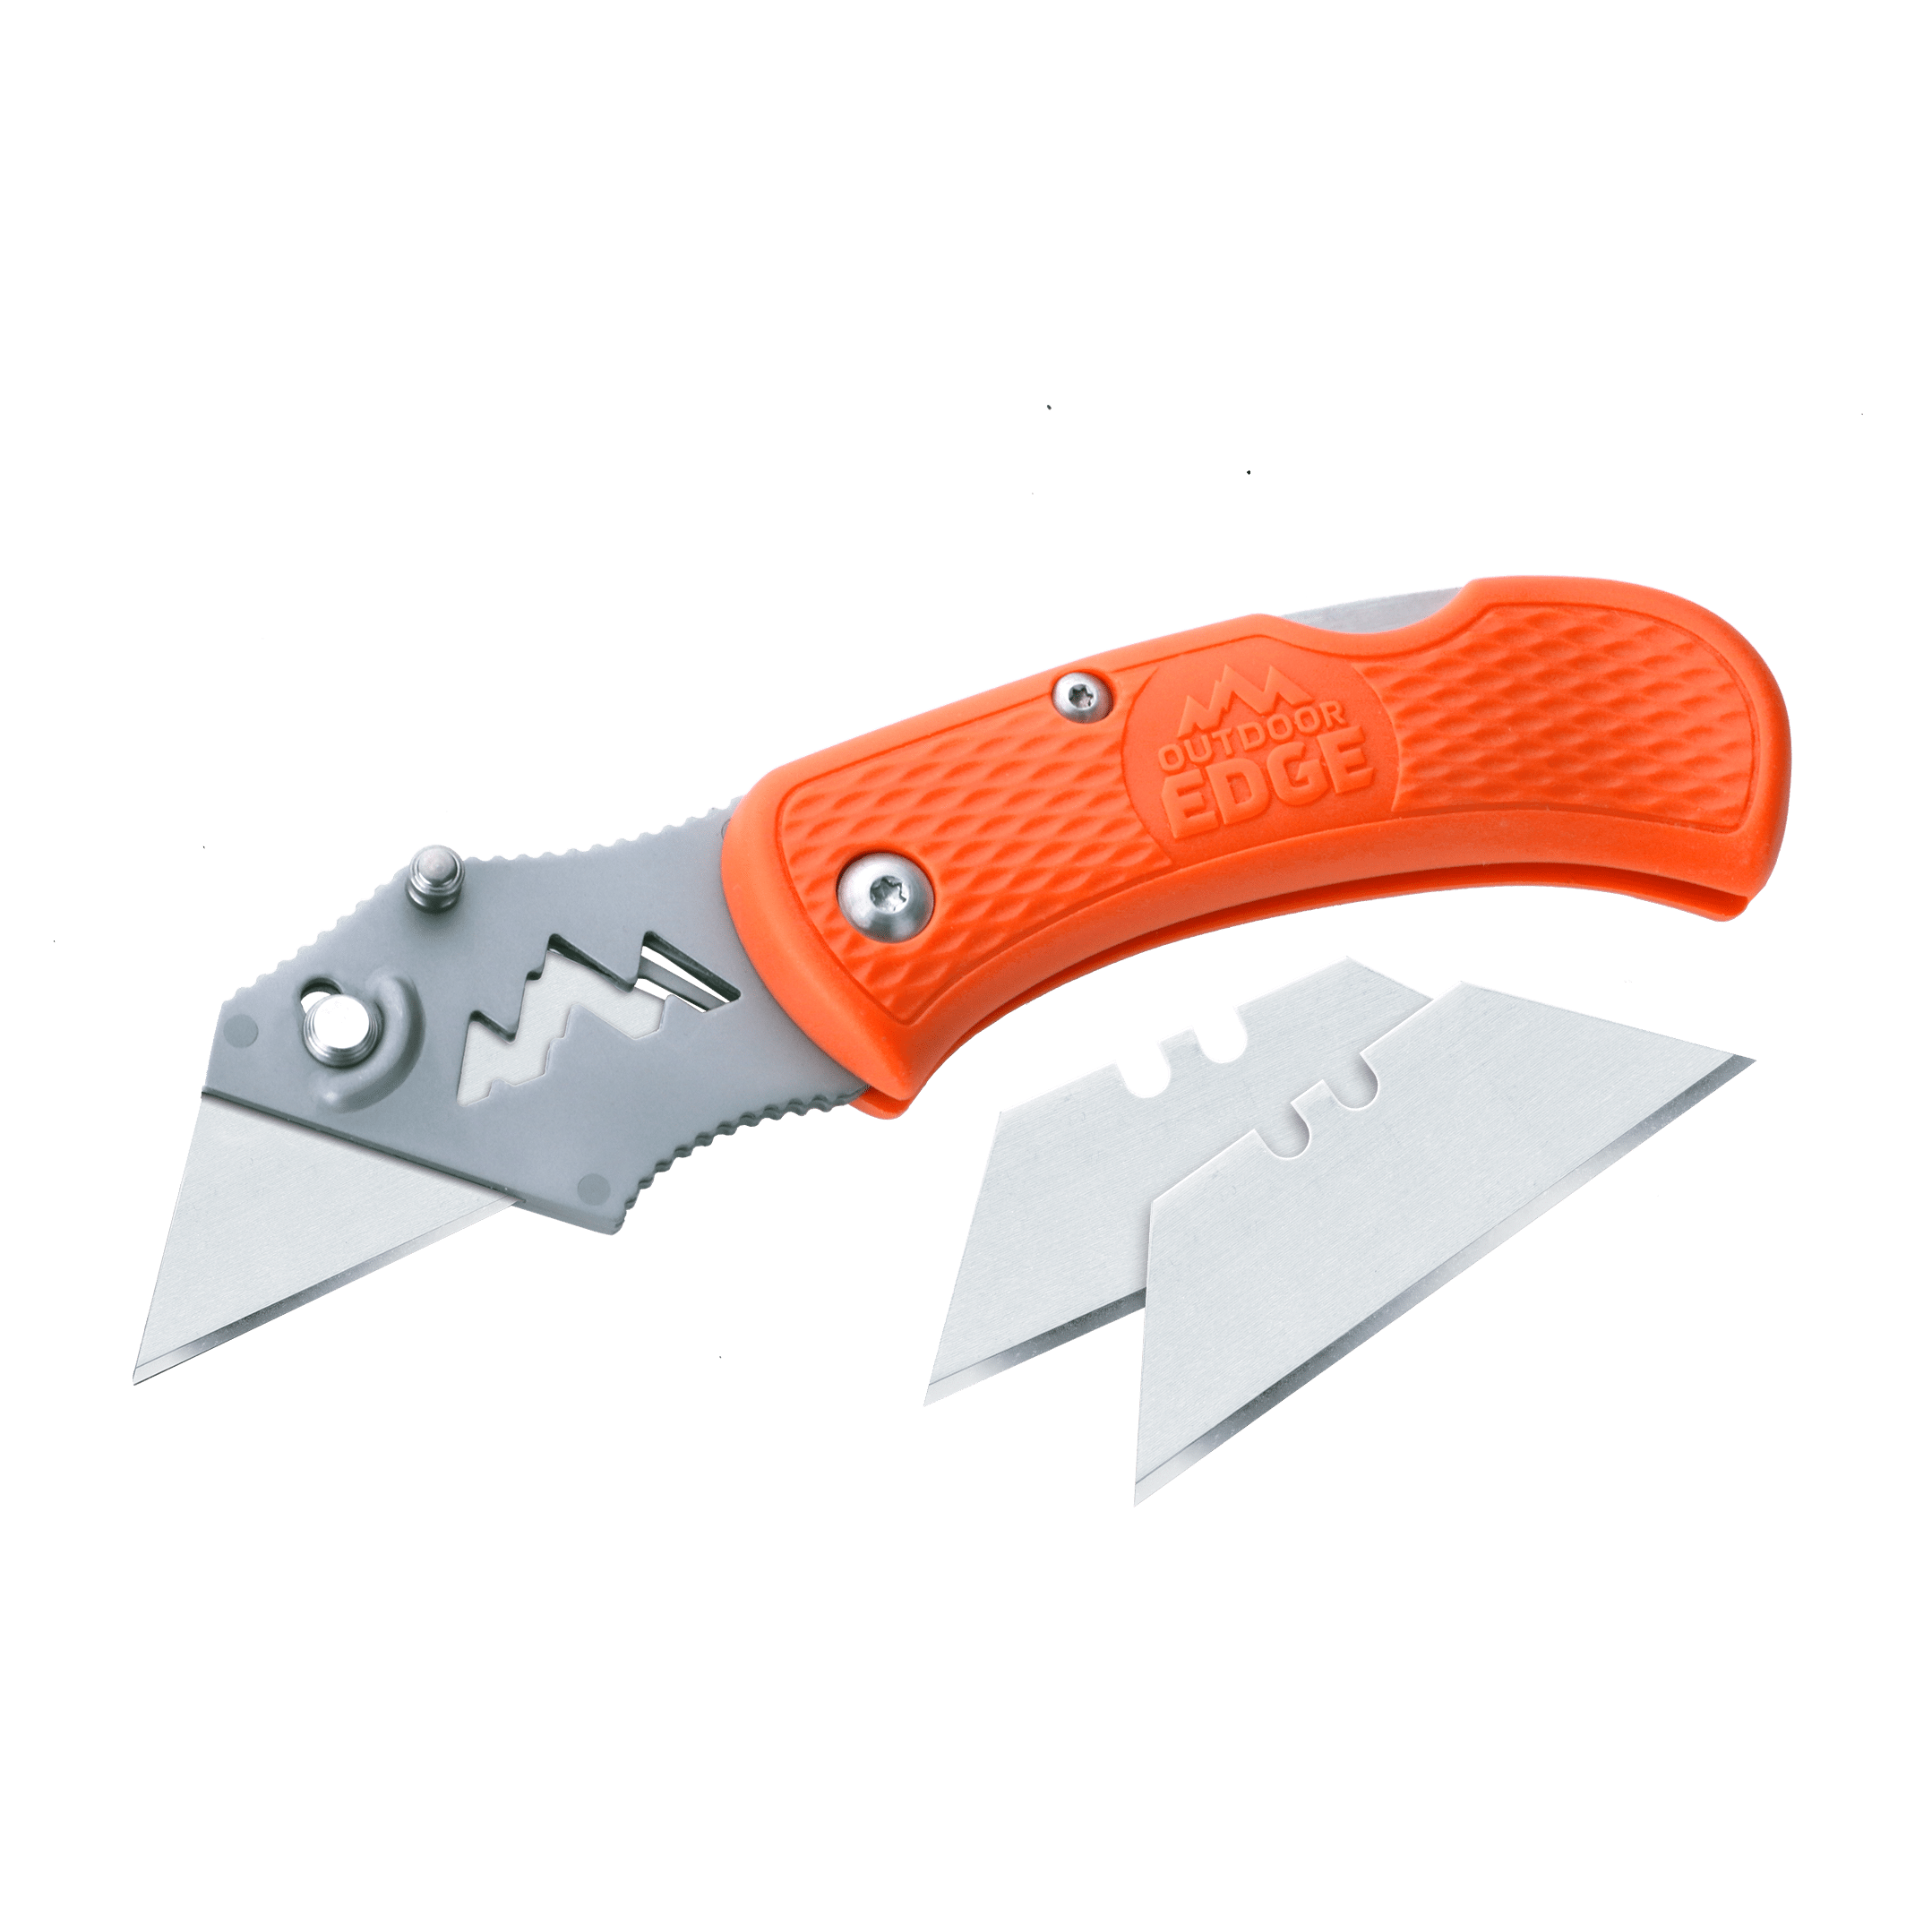 Folding Utility Knife